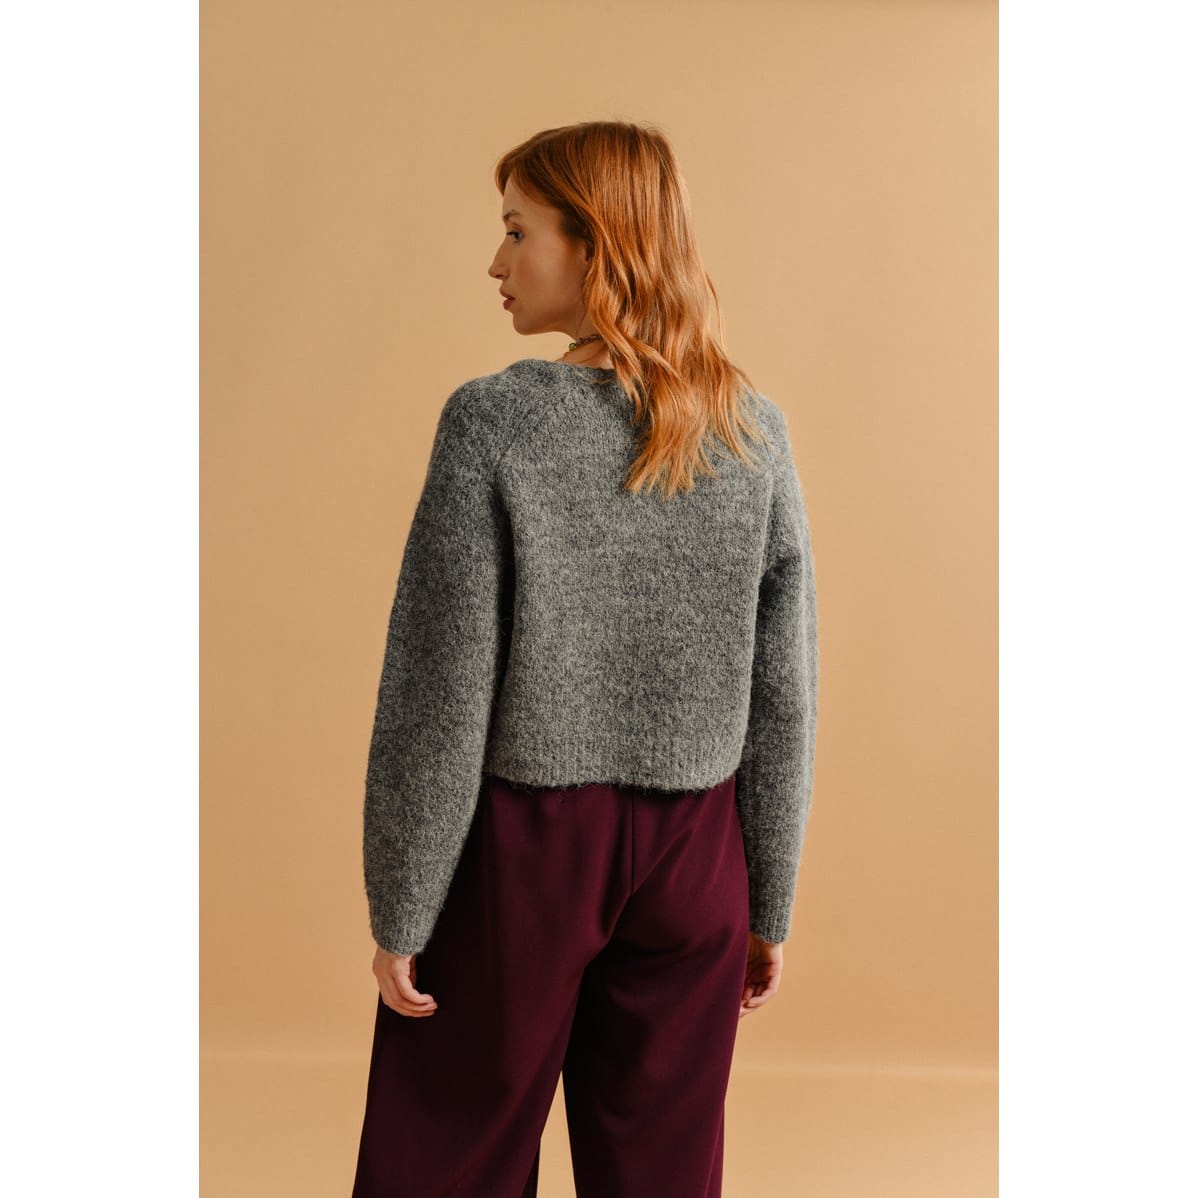 Molly Bracken - Ladies Knitted Sweater Bs - Ash Dark Grey (2)